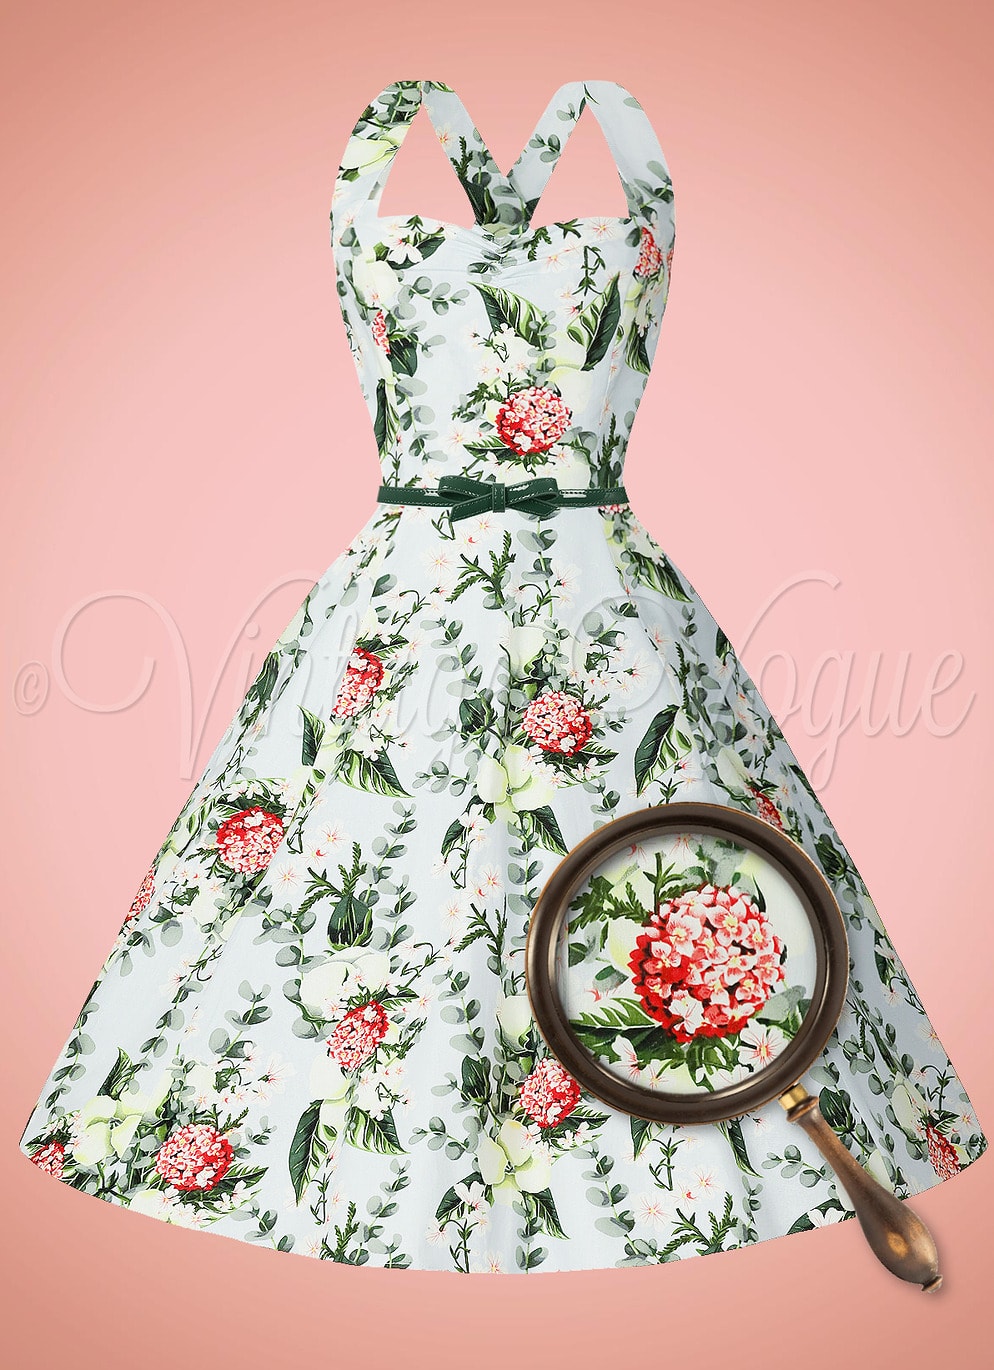 Banned Retro 50's Vintage Pin-Up Floral Kleid Bloom Swing Dress in Hellblau 50er Jahre Petticoat Damenkleid Blumen Rosen Geblümt Hochzeitsgast Sommerkleid